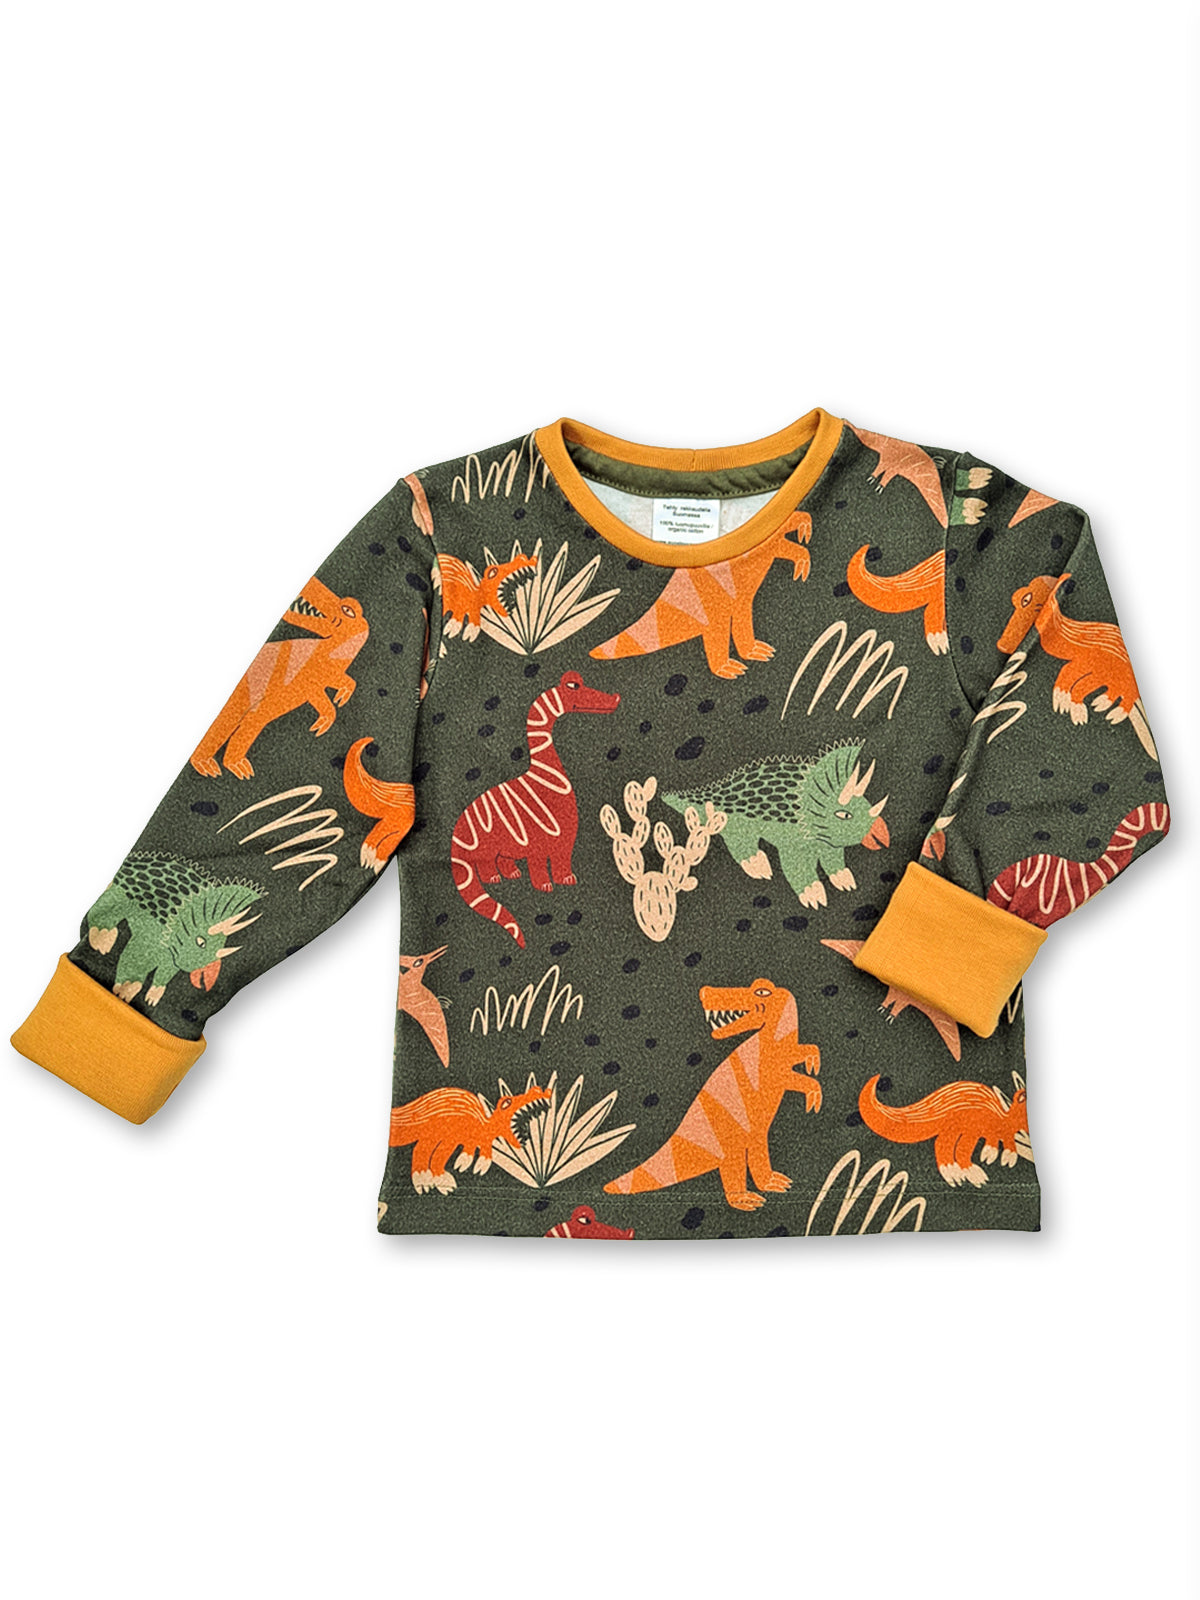 Lasten luomupuuvillainen paita dinosauruskuosilla. Valmistettu rakkaudella Suomessa!